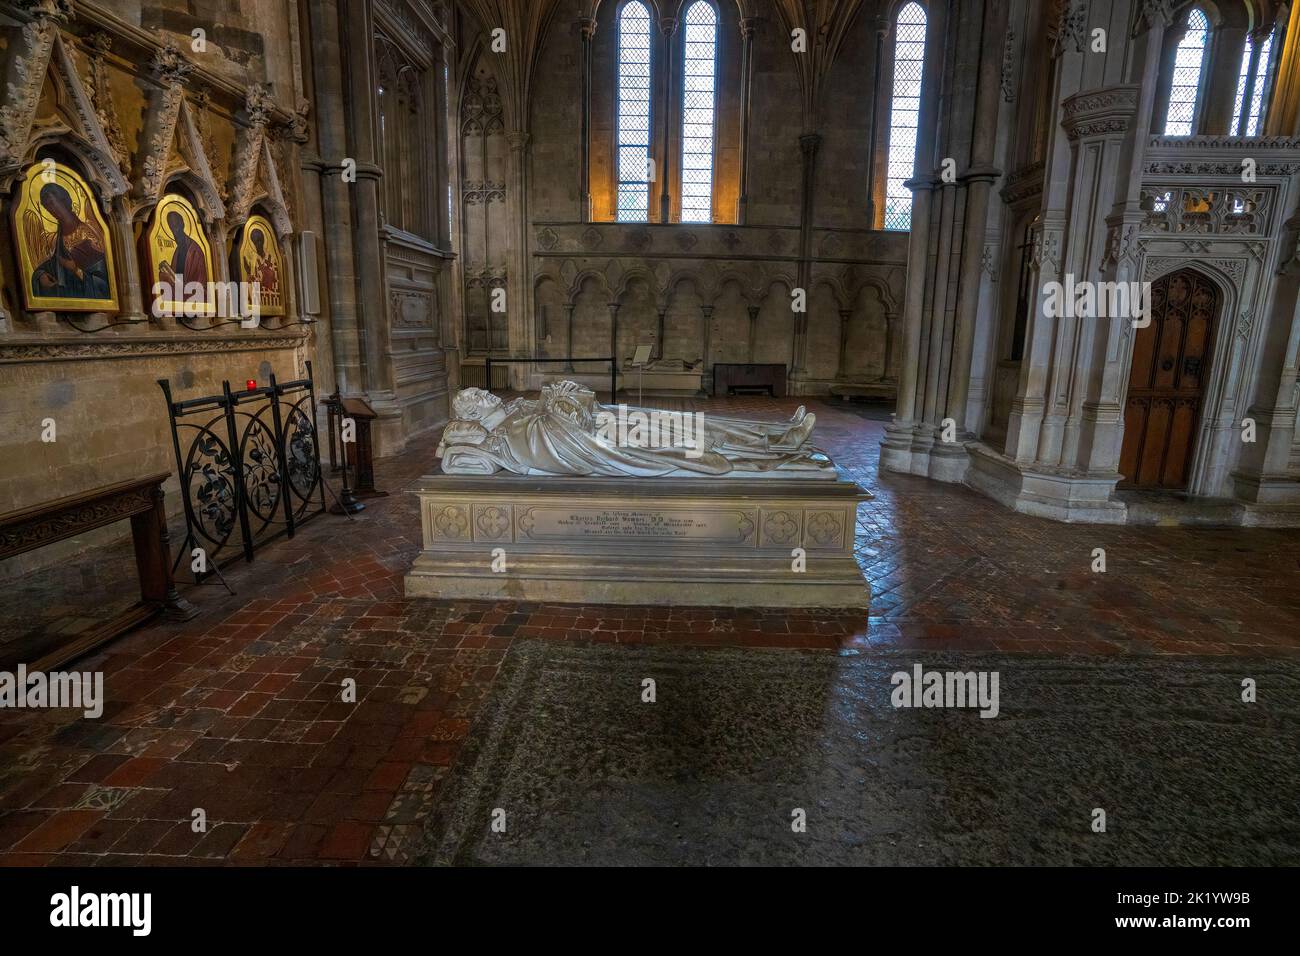 La tombe de Charles Richard Sumner Bishop 1827 à la cathédrale de Winchester, Winchester, Hampshire, Angleterre, Royaume-Uni Banque D'Images